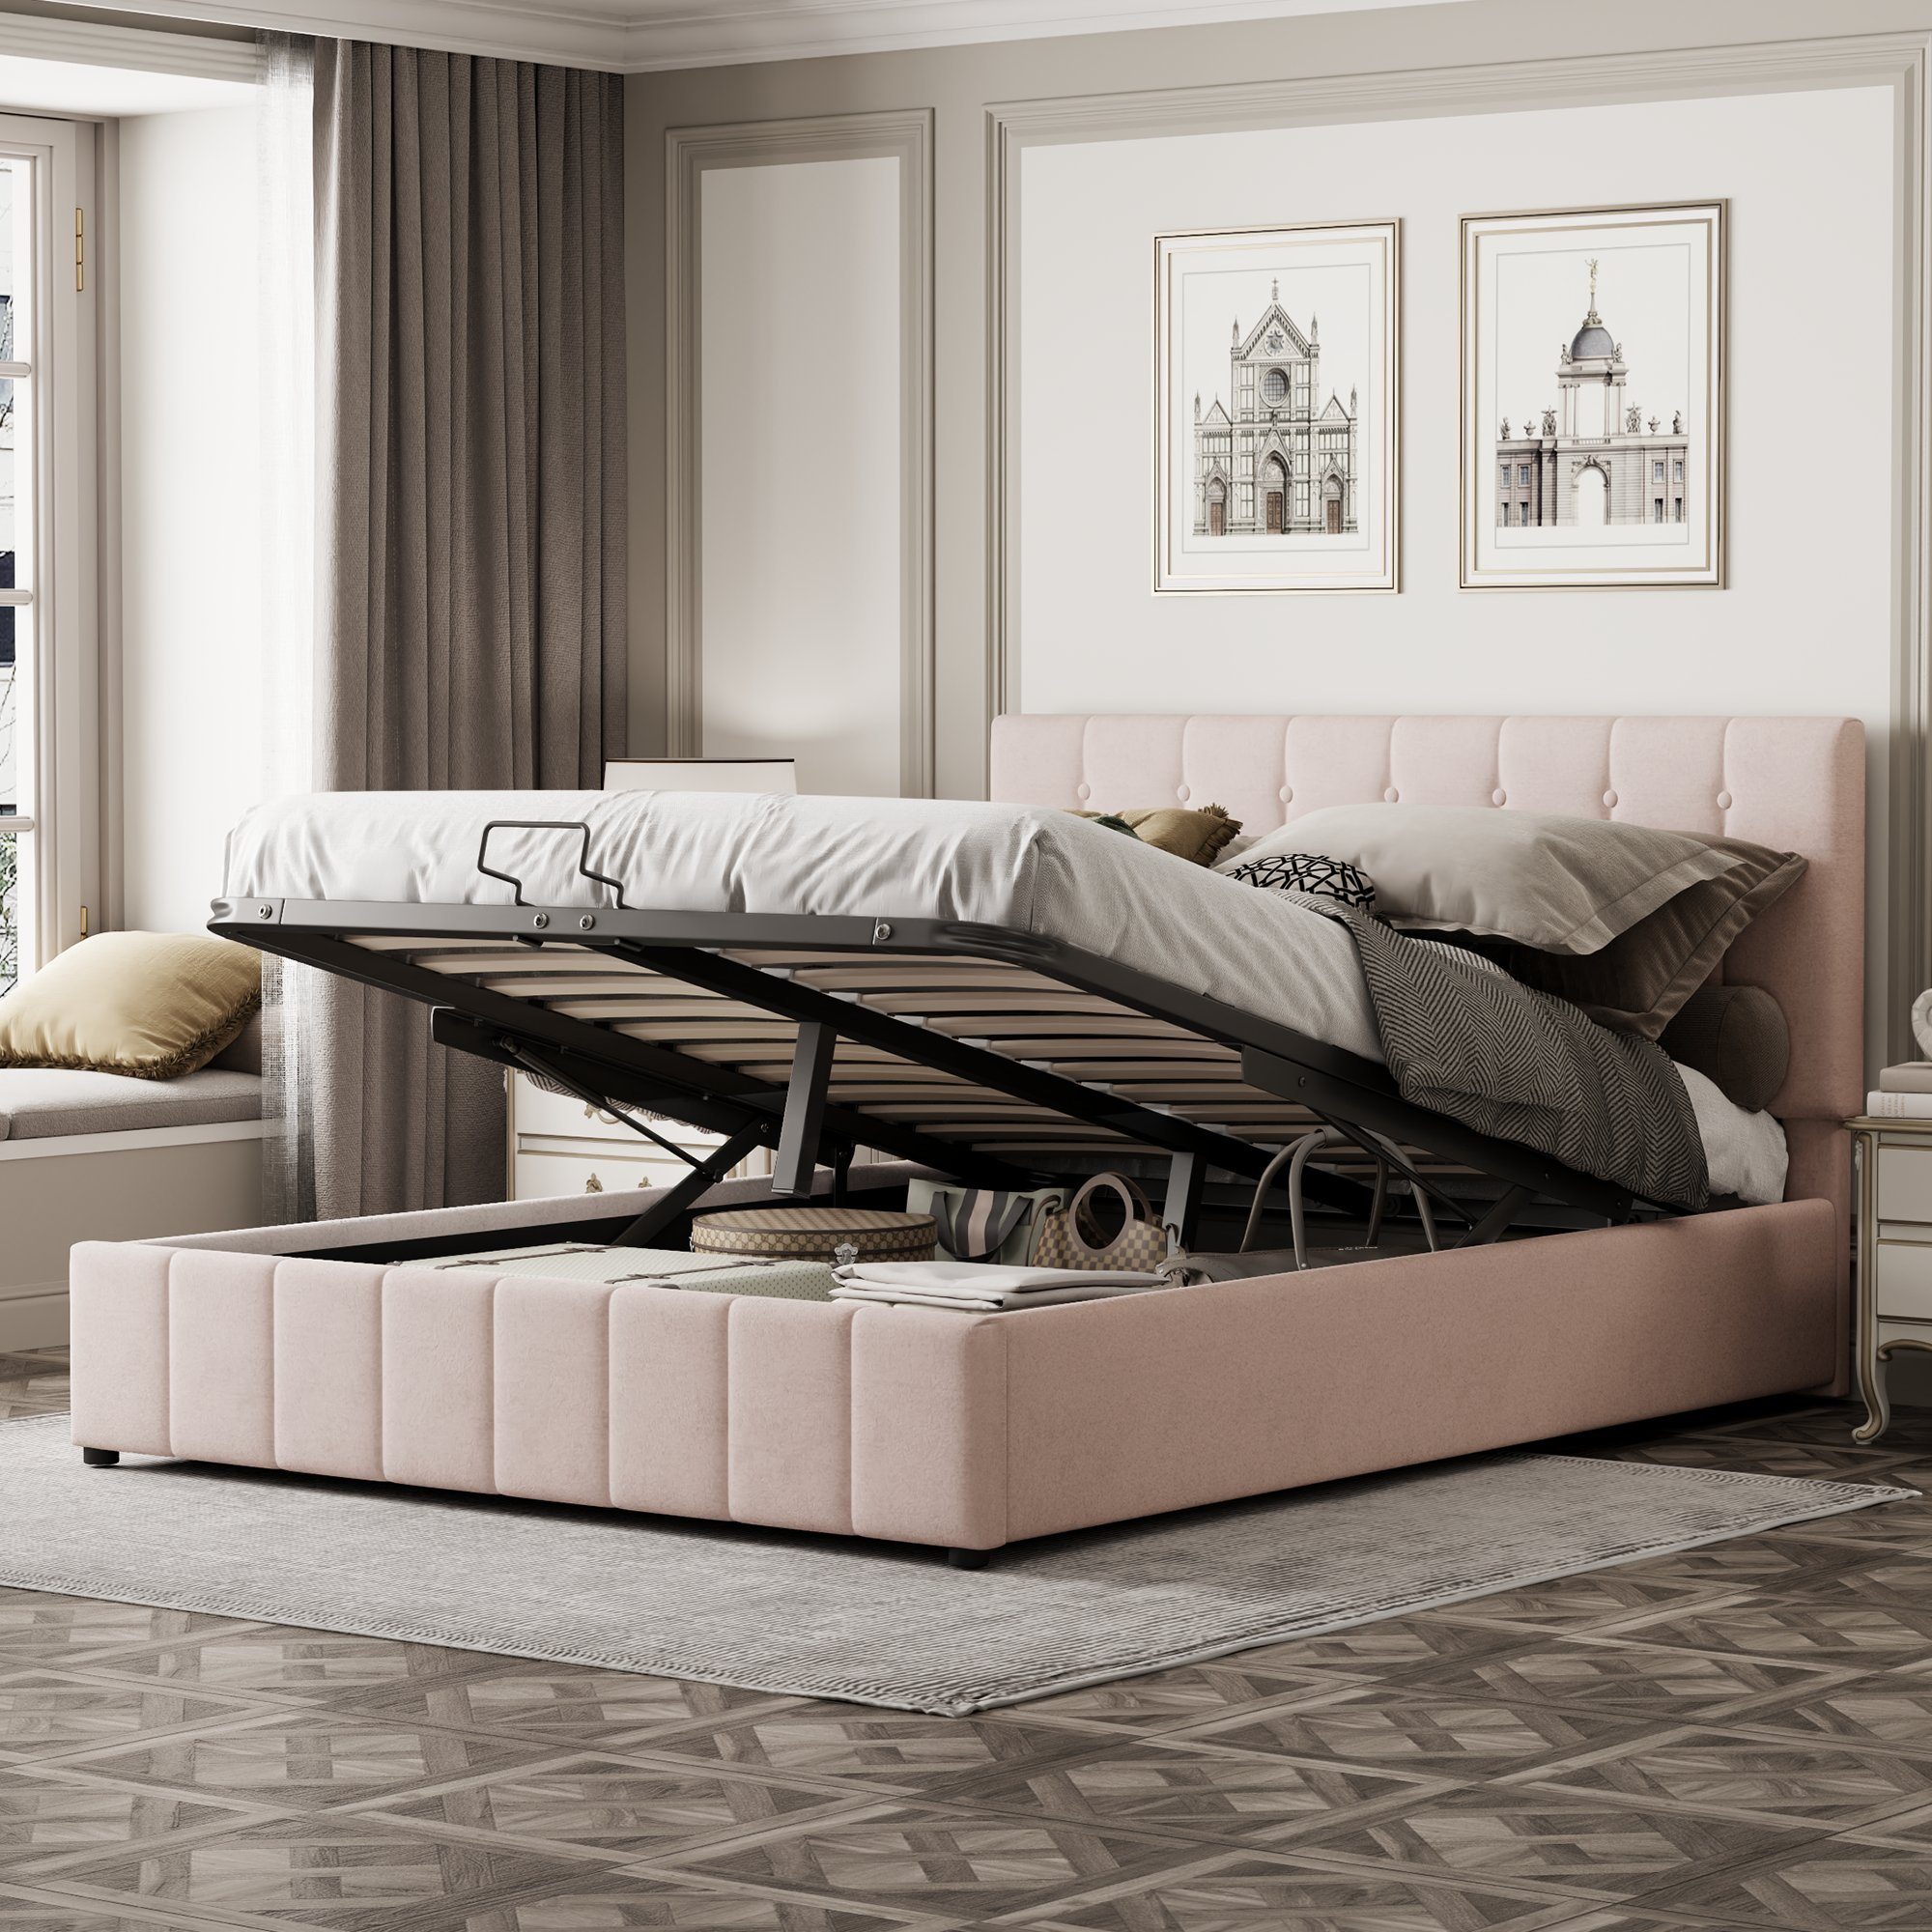 REDOM Polsterbett Gepolstertes Doppelbett Bett 140*200 cm mit Bettgestell ohne Matratze Dunkelbeige